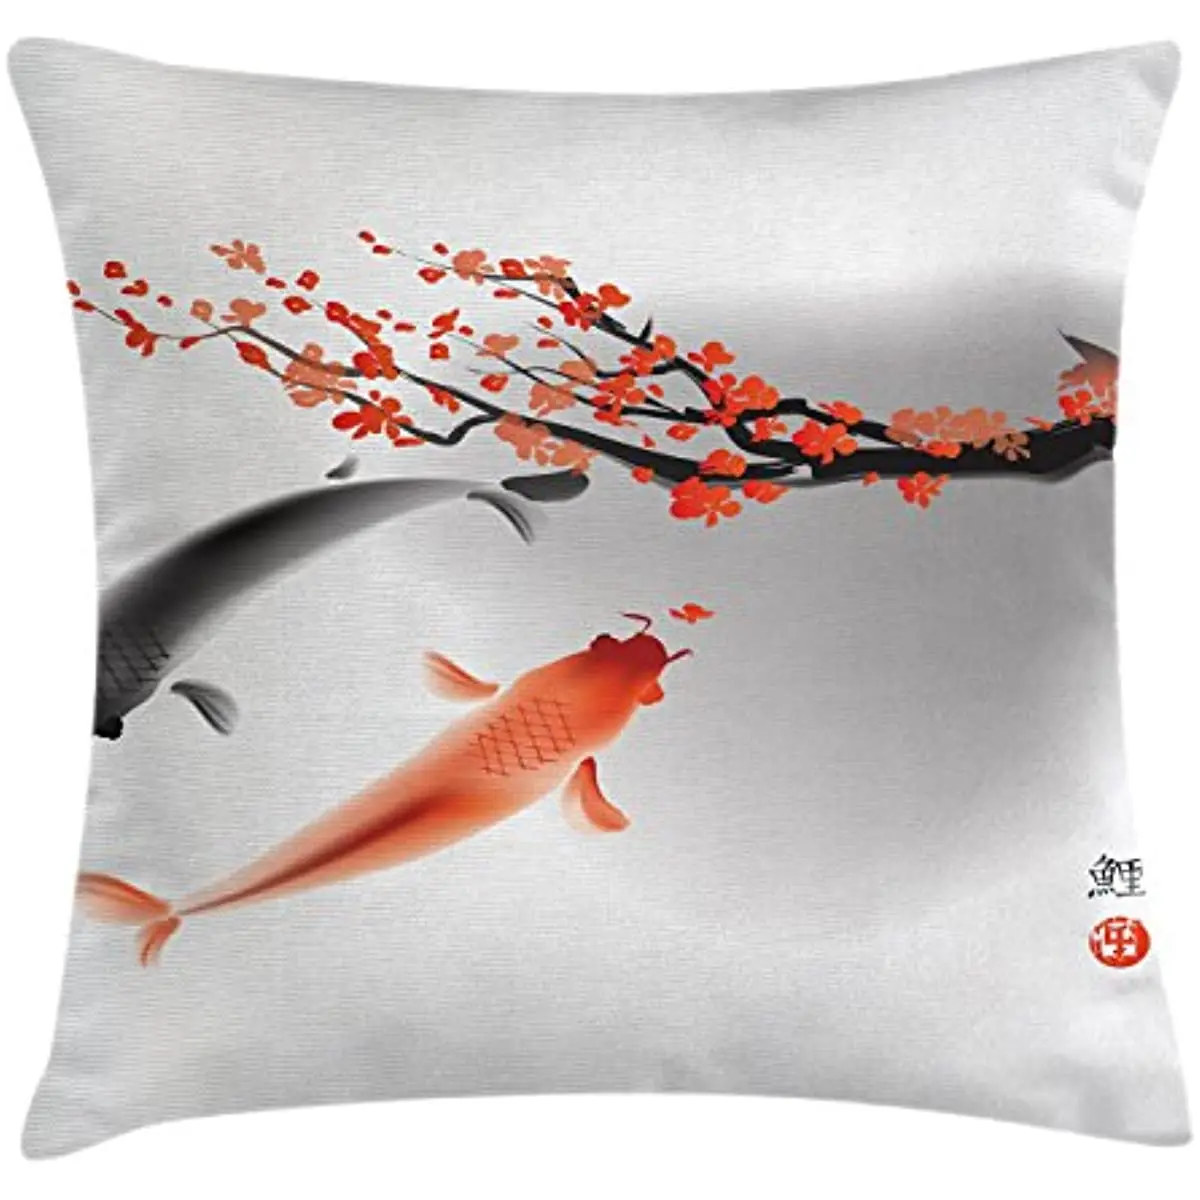 

Koi Carp Fish Couple Swimming Cherry Blossom Sakura Branch Culture Design, Decorative Square Accent Pillow Case